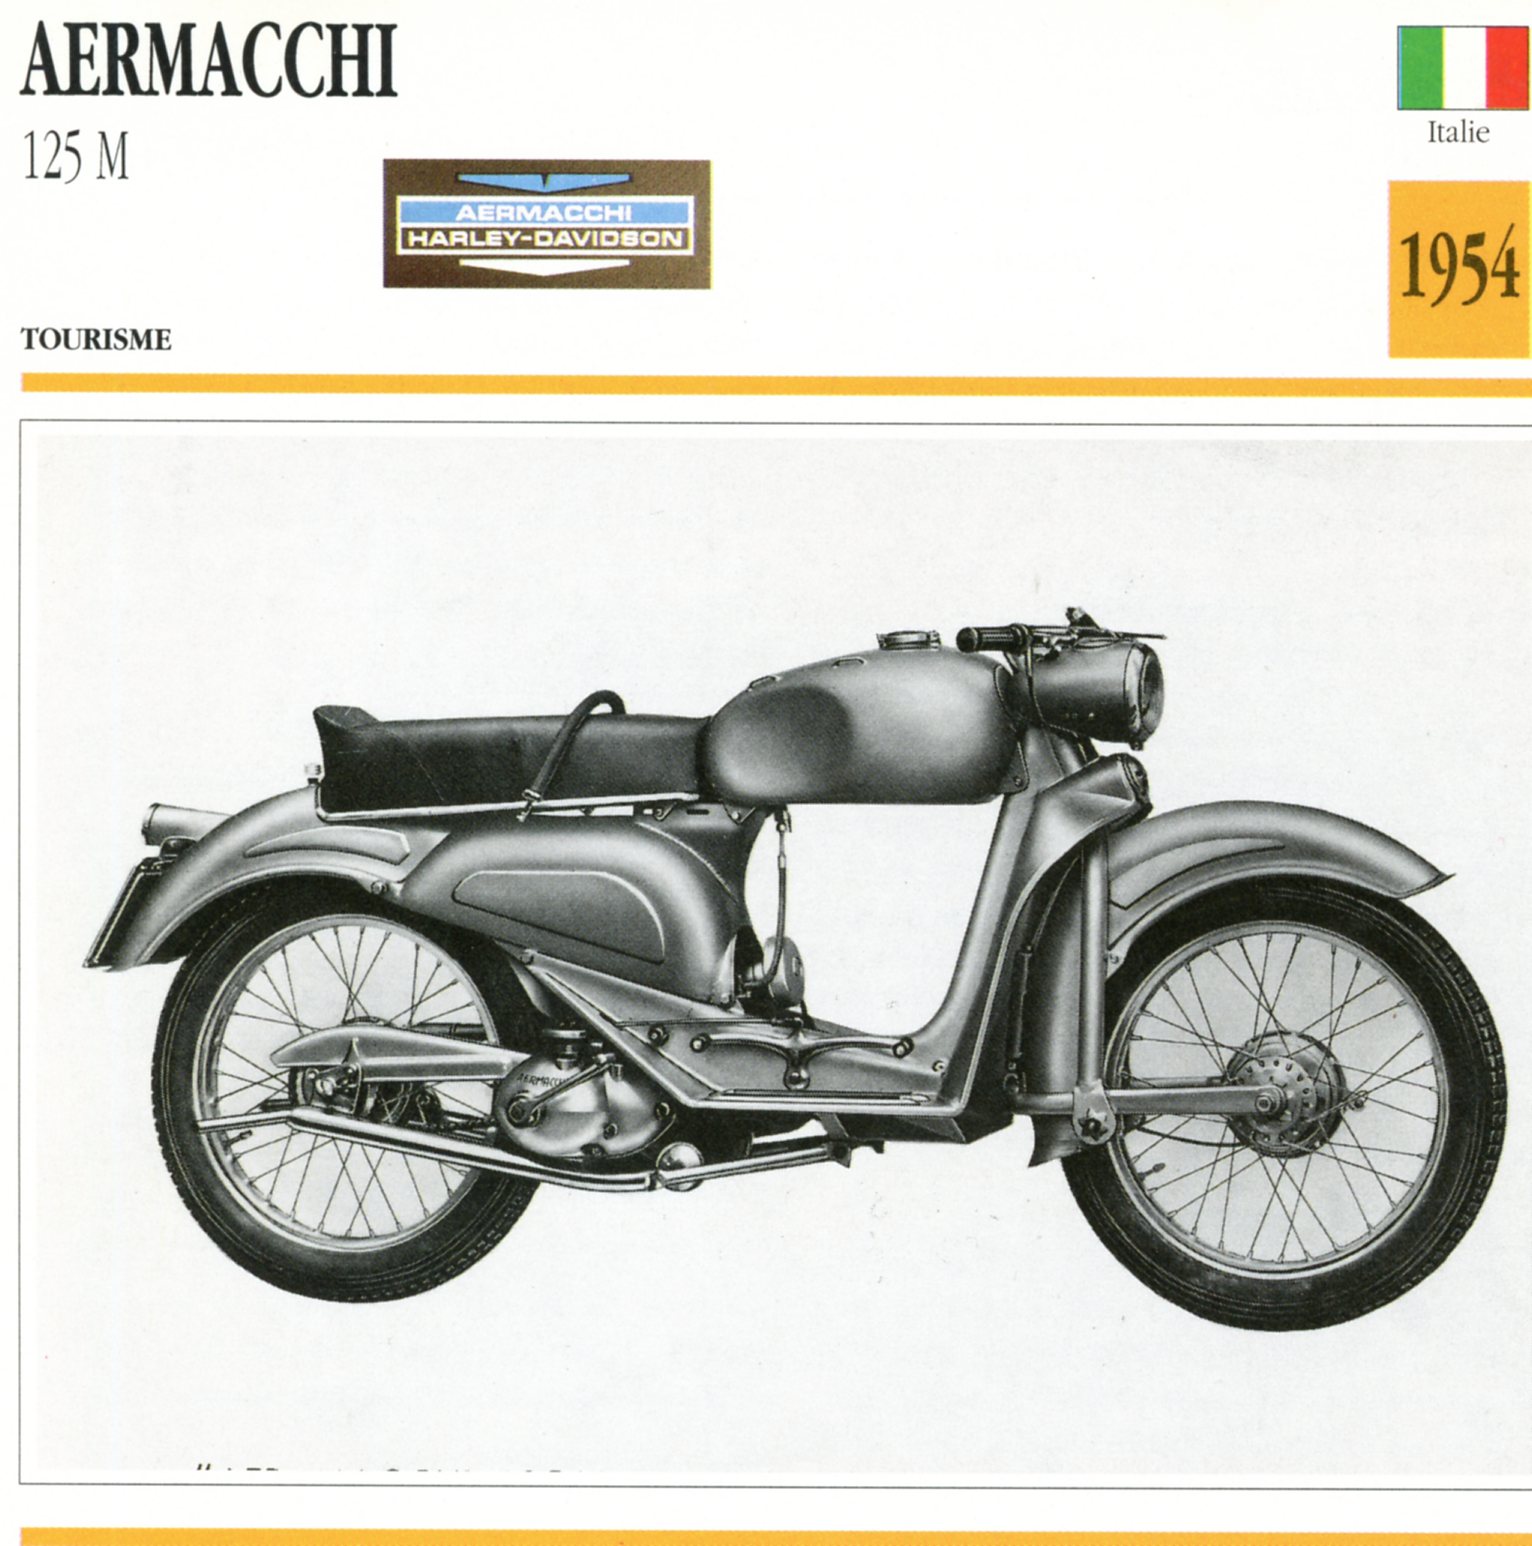 AERMACCHI 125 M 1954 - CARTE CARD FICHE MOTO CARACTERISTIQUES